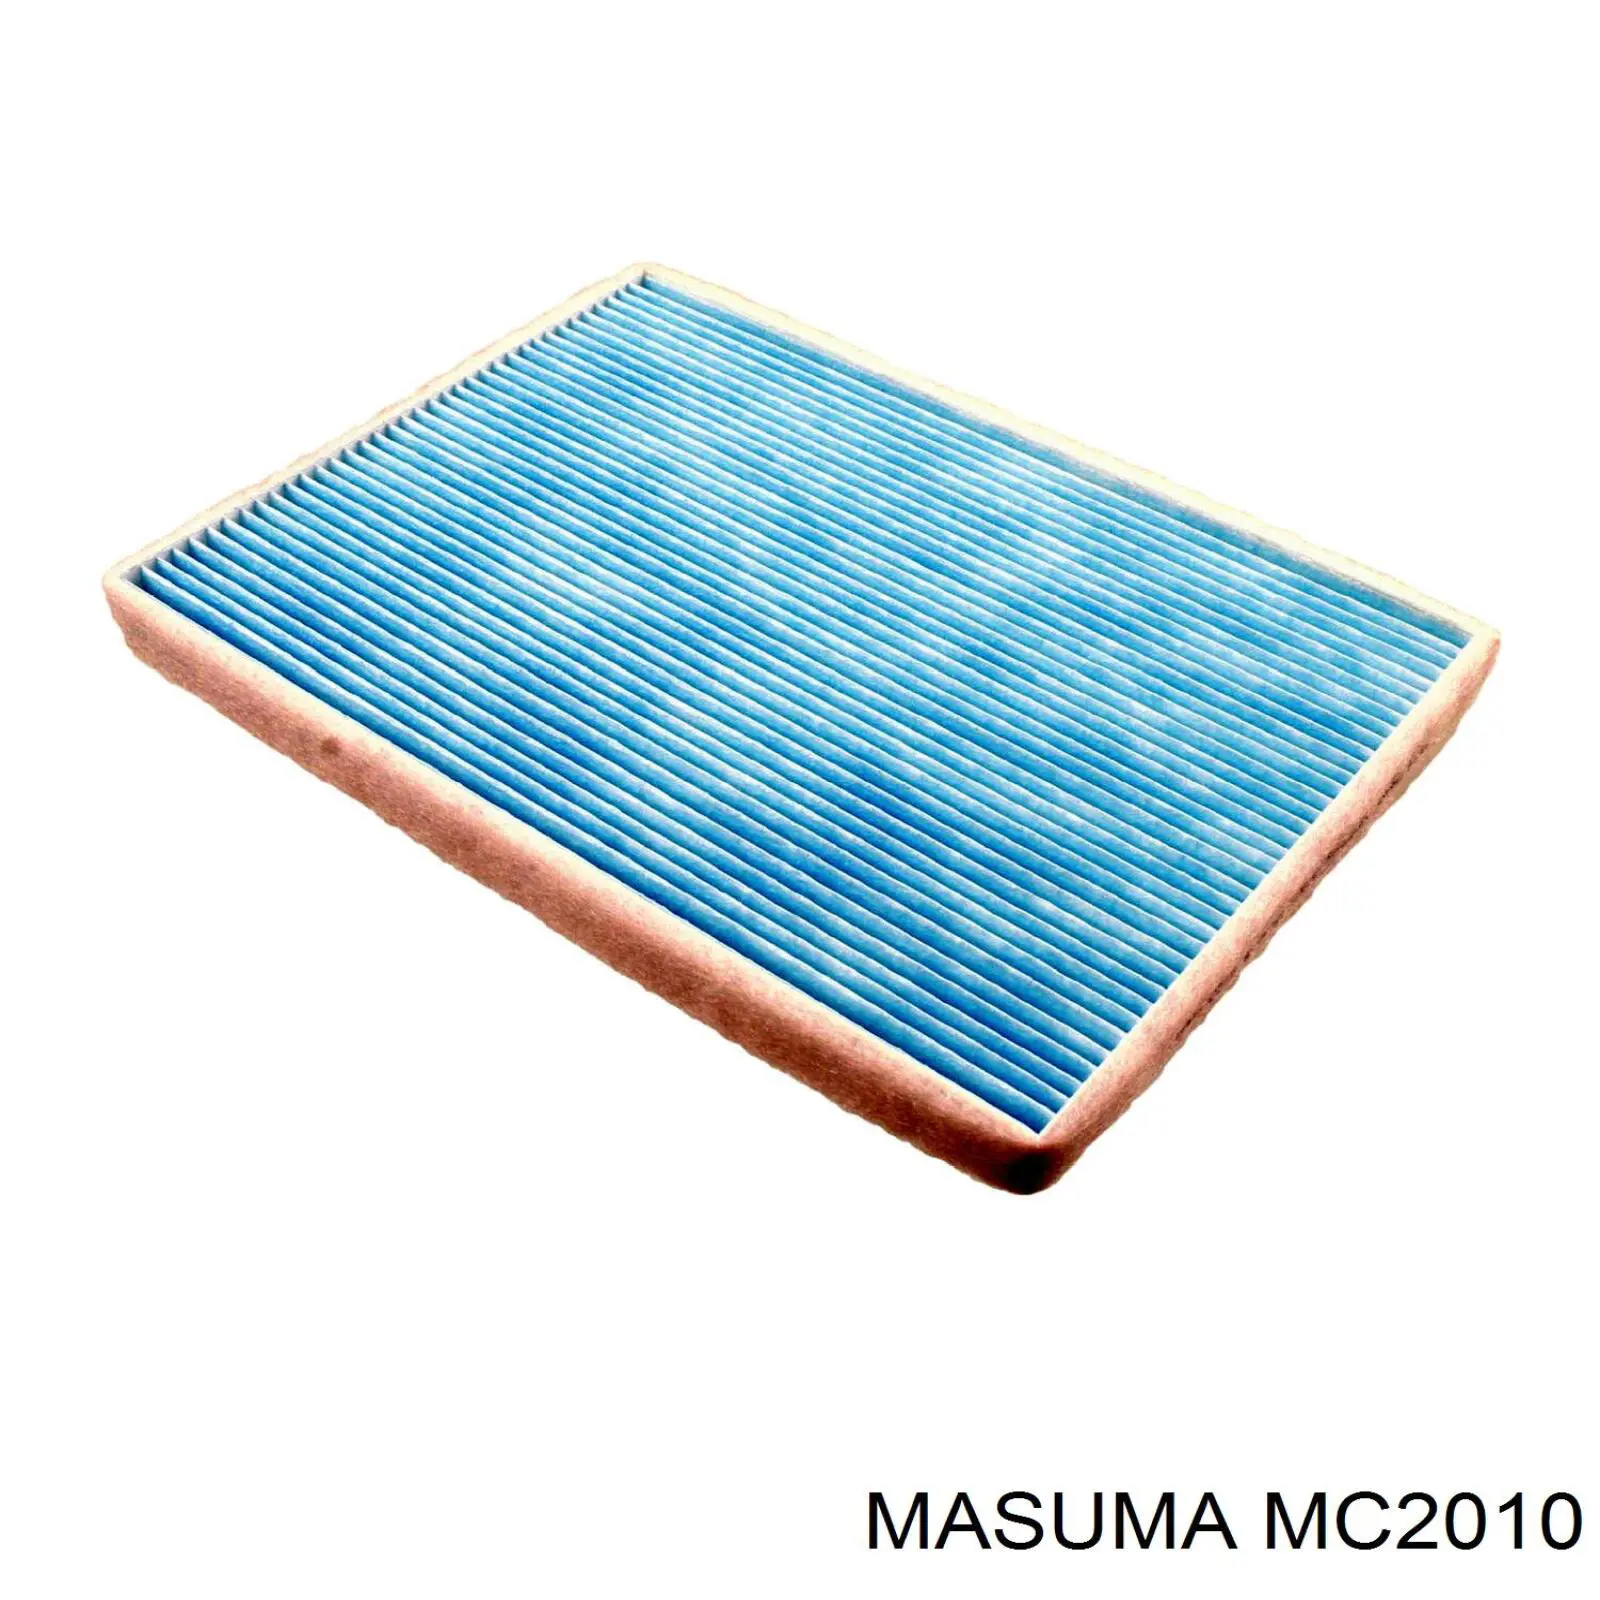 MC2010 Masuma фильтр салона